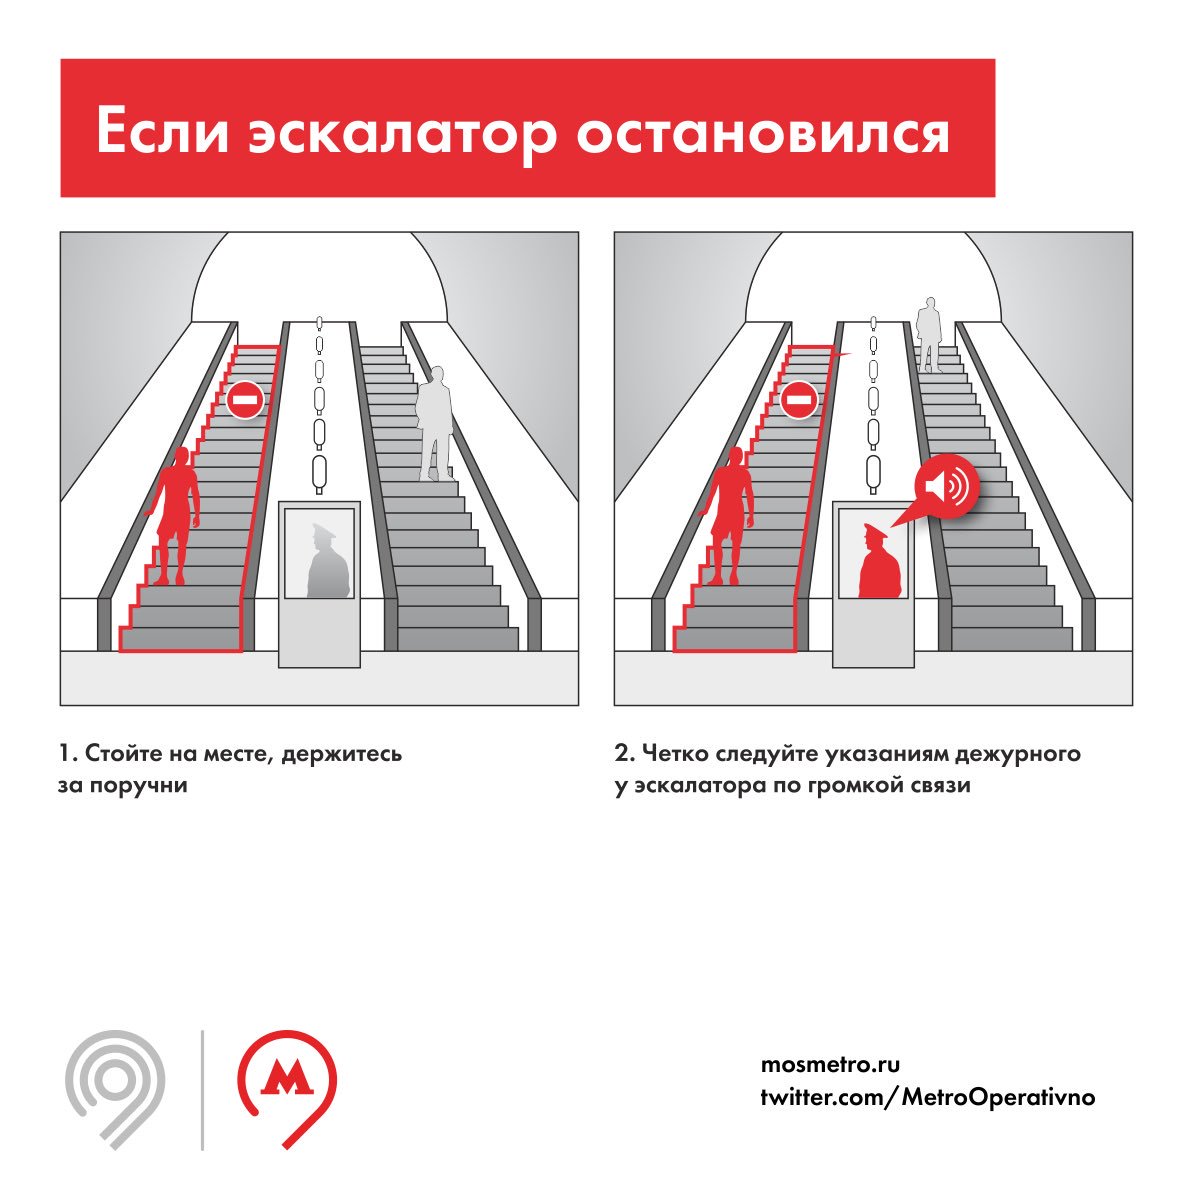 Правила эксплуатации метрополитена. Правила поведения в метрополитене на эскалаторе. Безопасность на эскалаторе в метро. Безопасность в метрополитене. Правила на эскалаторе.